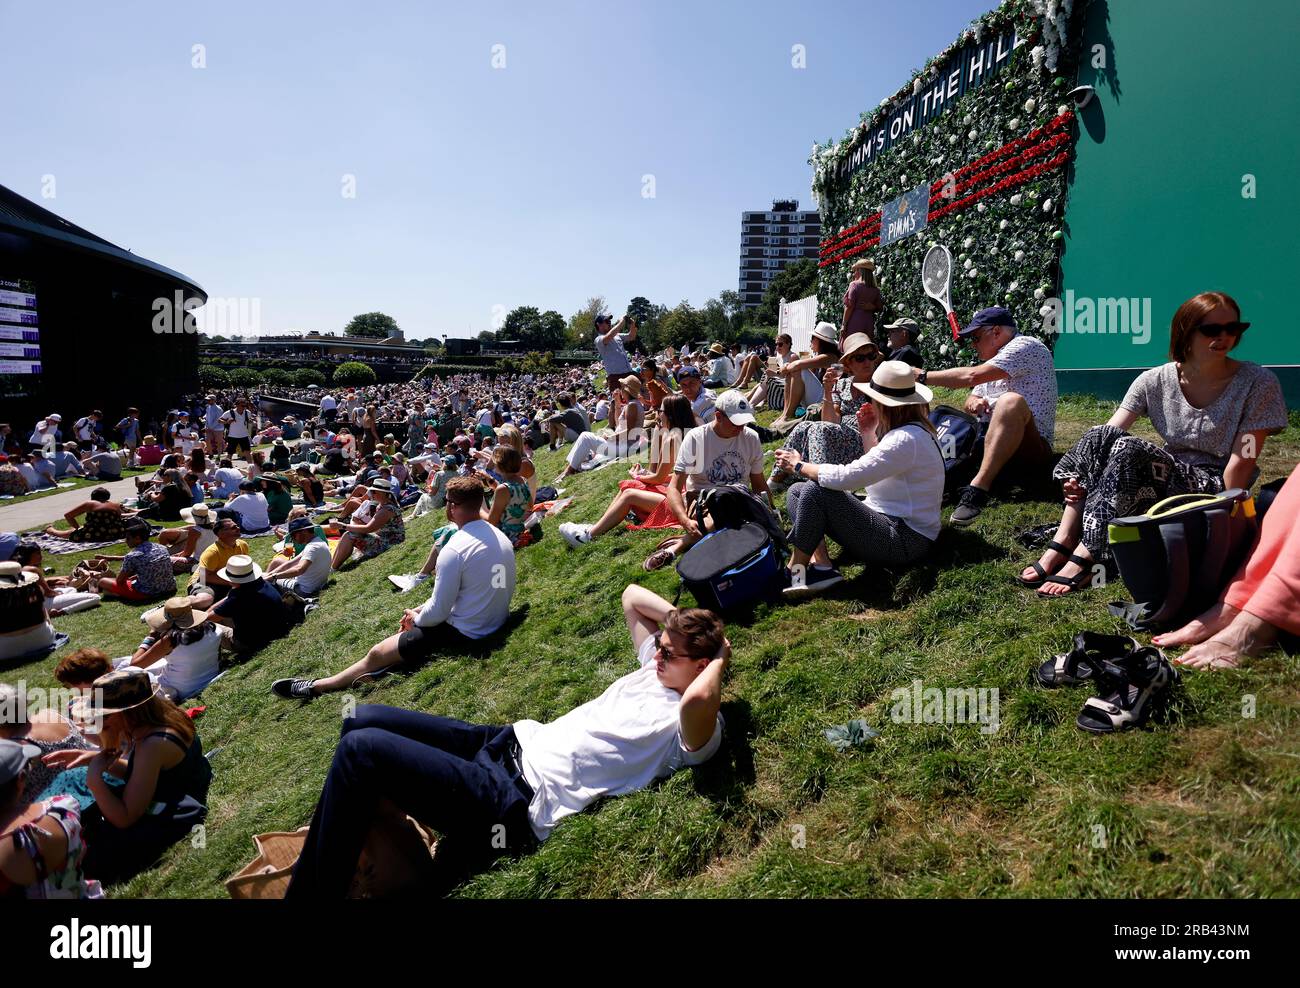 Spettatori sulla collina il quinto giorno dei campionati di Wimbledon 2023 presso l'All England Lawn Tennis and Croquet Club di Wimbledon. Data immagine: Venerdì 7 luglio 2023. Foto Stock